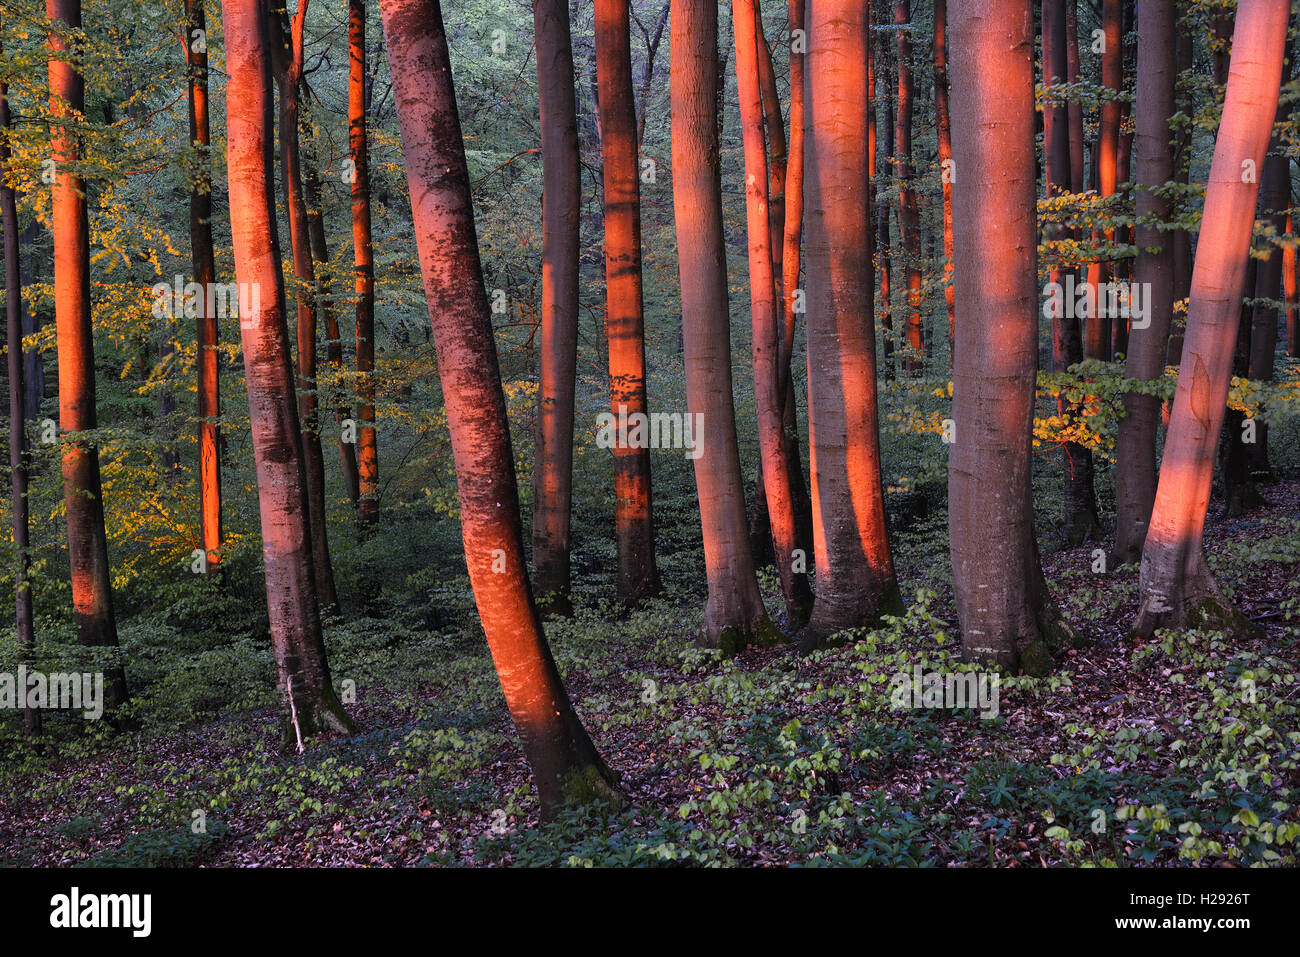 Illuminata tronchi di alberi nella foresta di faggio, Europeo faggio (Fagus sylvatica), la luce del mattino, la molla Jasmund National Park, Rügen Foto Stock